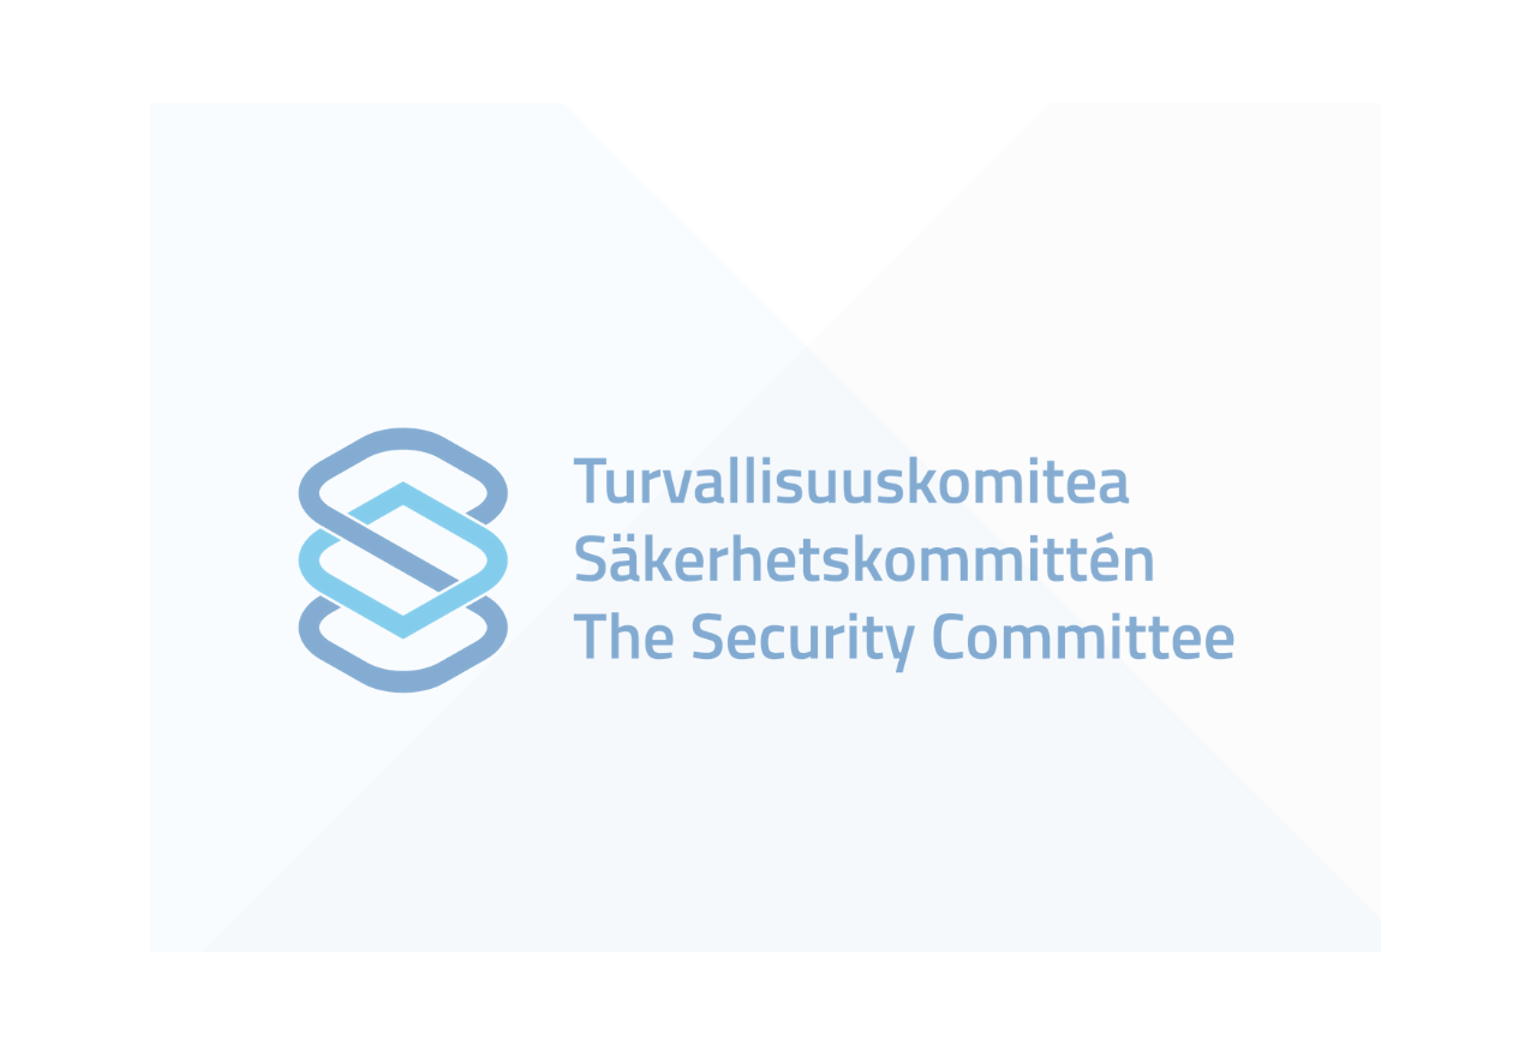 Grafiikka: Turvallisuuskomitean logo